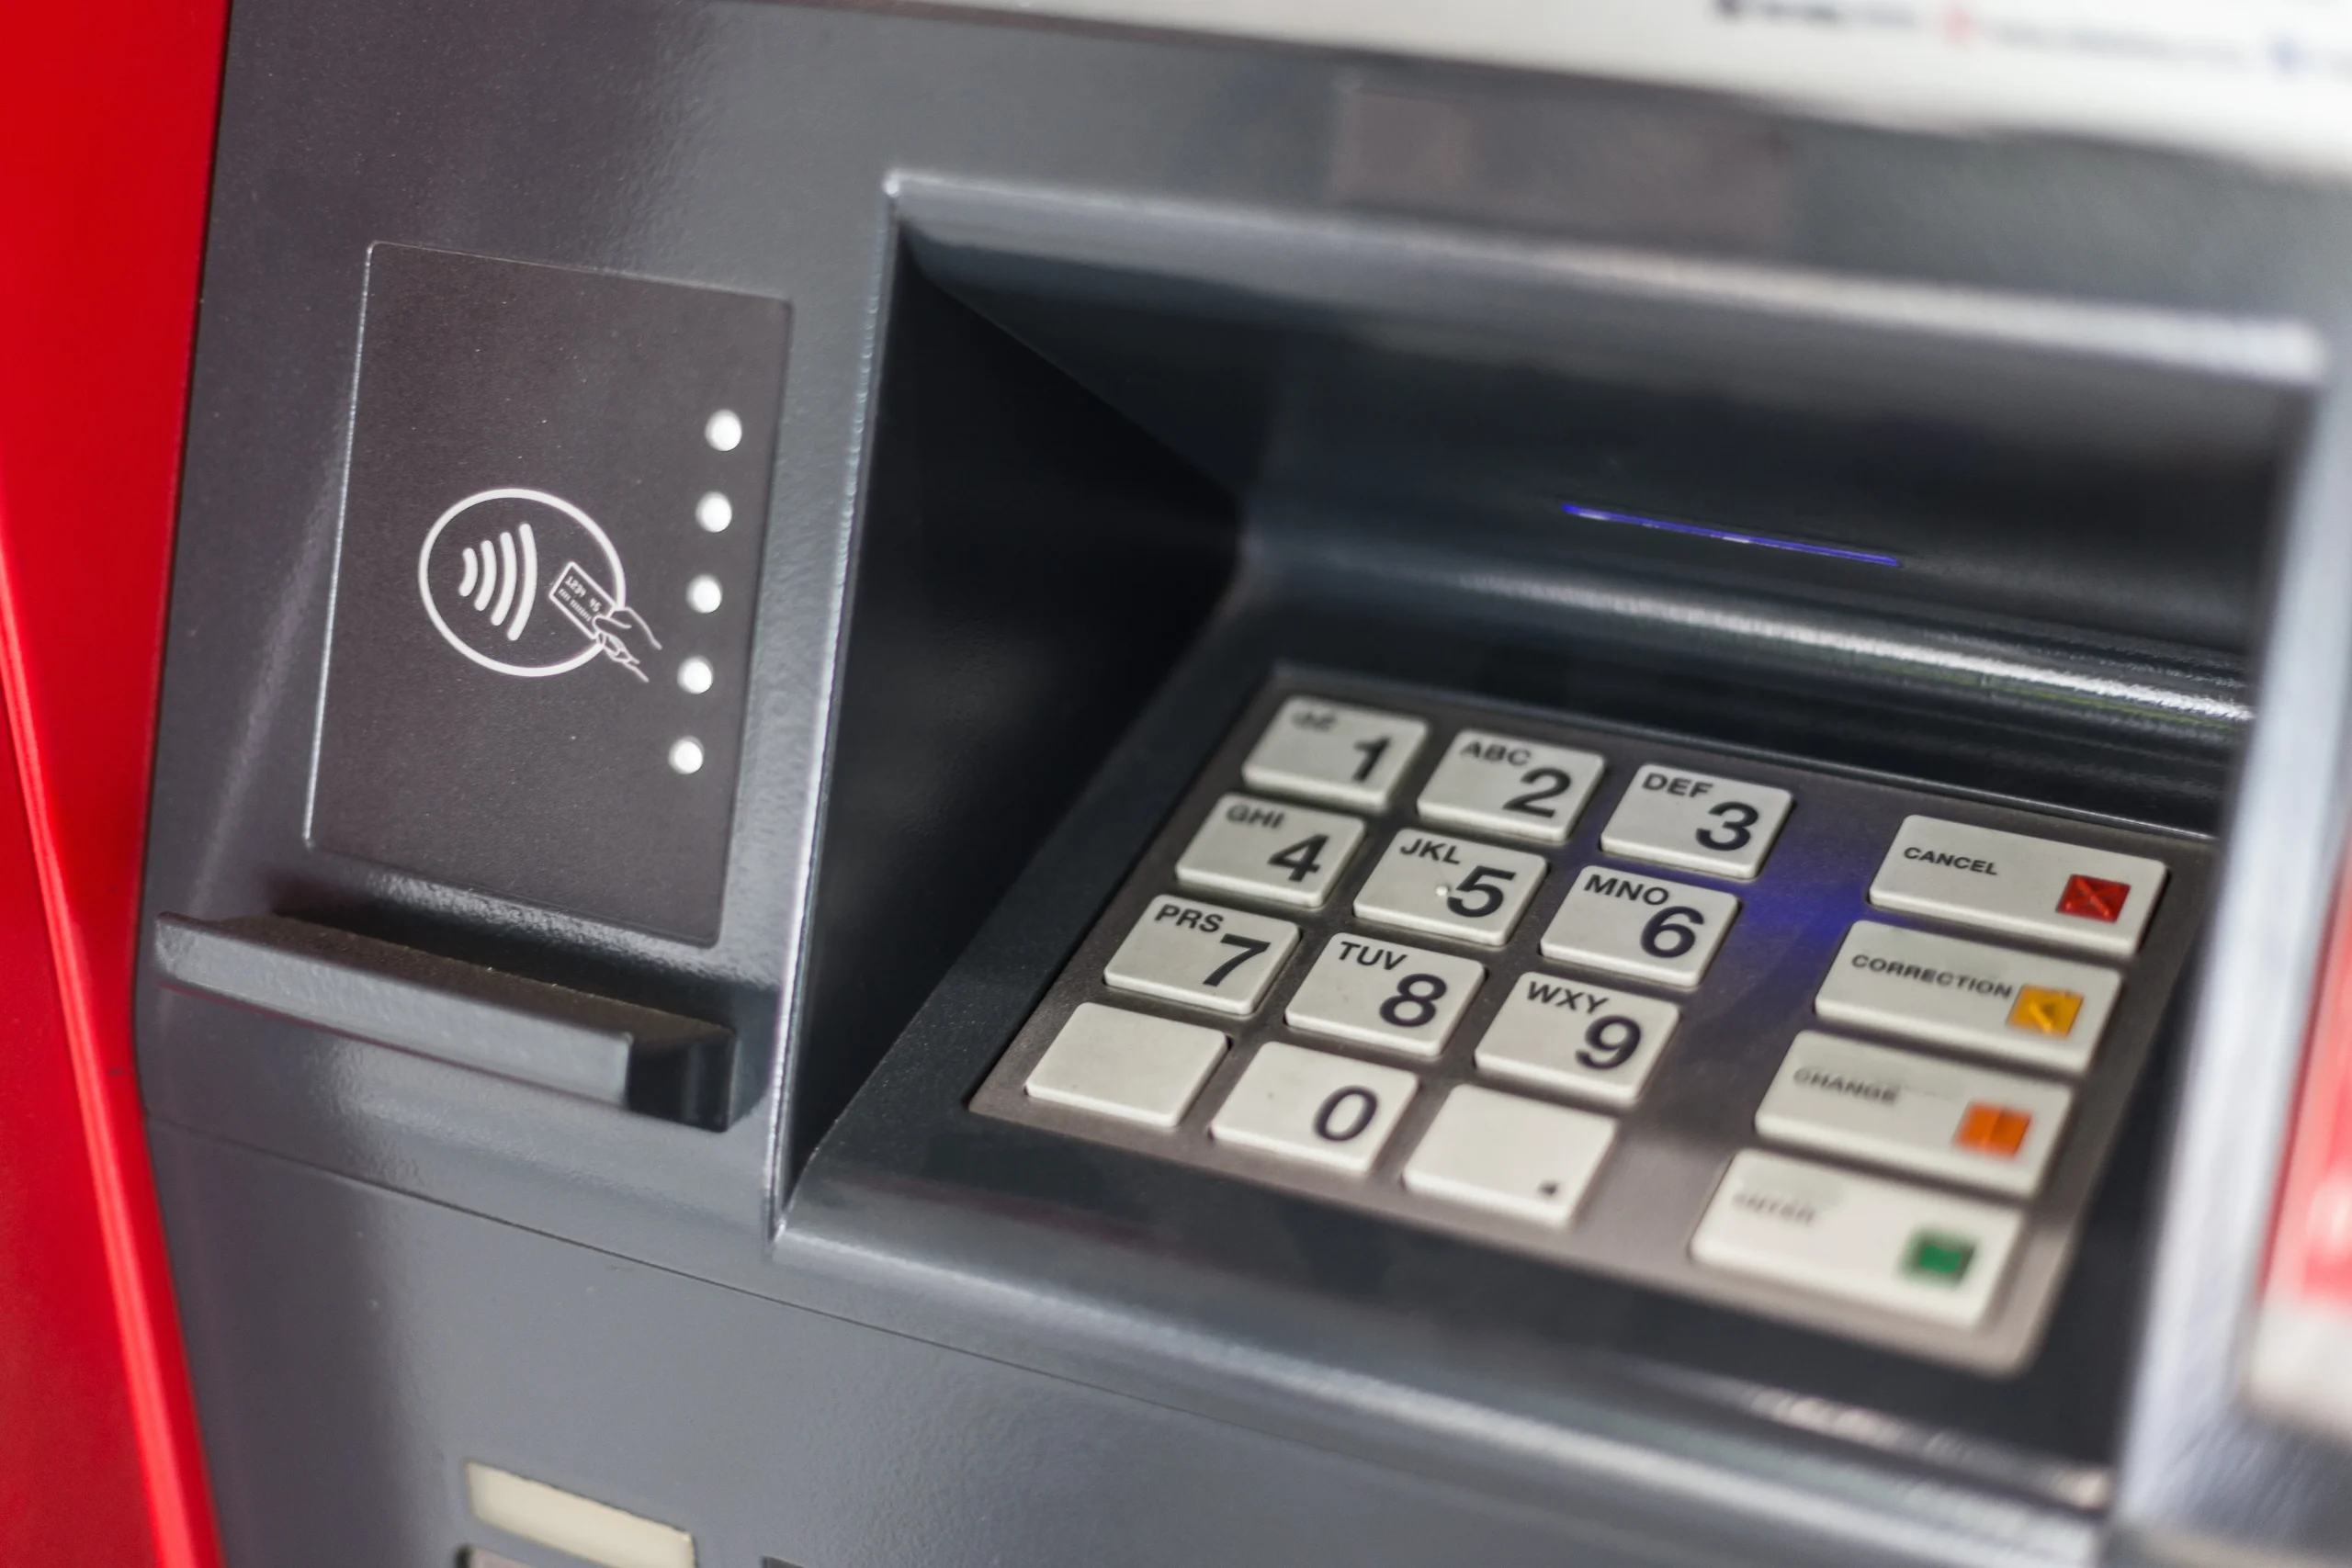 أخيراً حل نهائي مضمون لمشكلة سحب الفيزا من ماكينات ATM